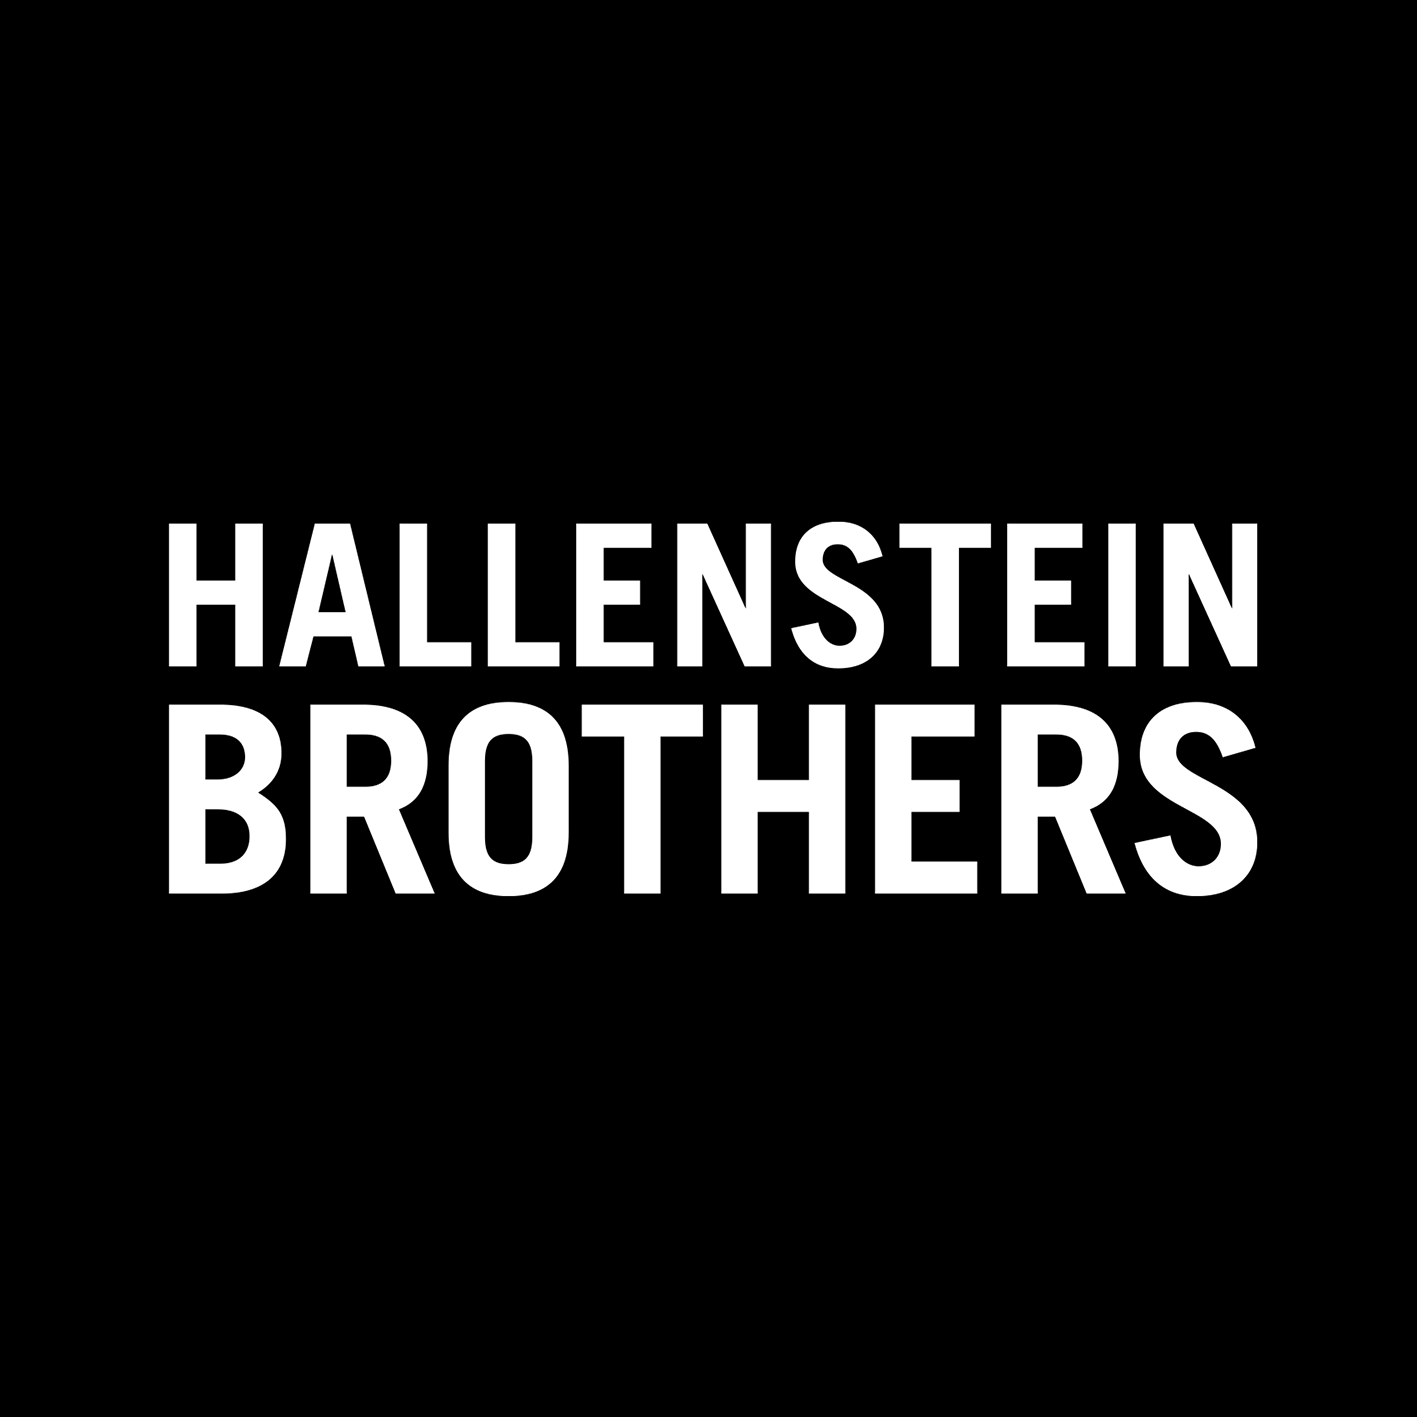 VERIFIED Hallenstein Brothers Promo Code Australia WORKING [month] [year] 1